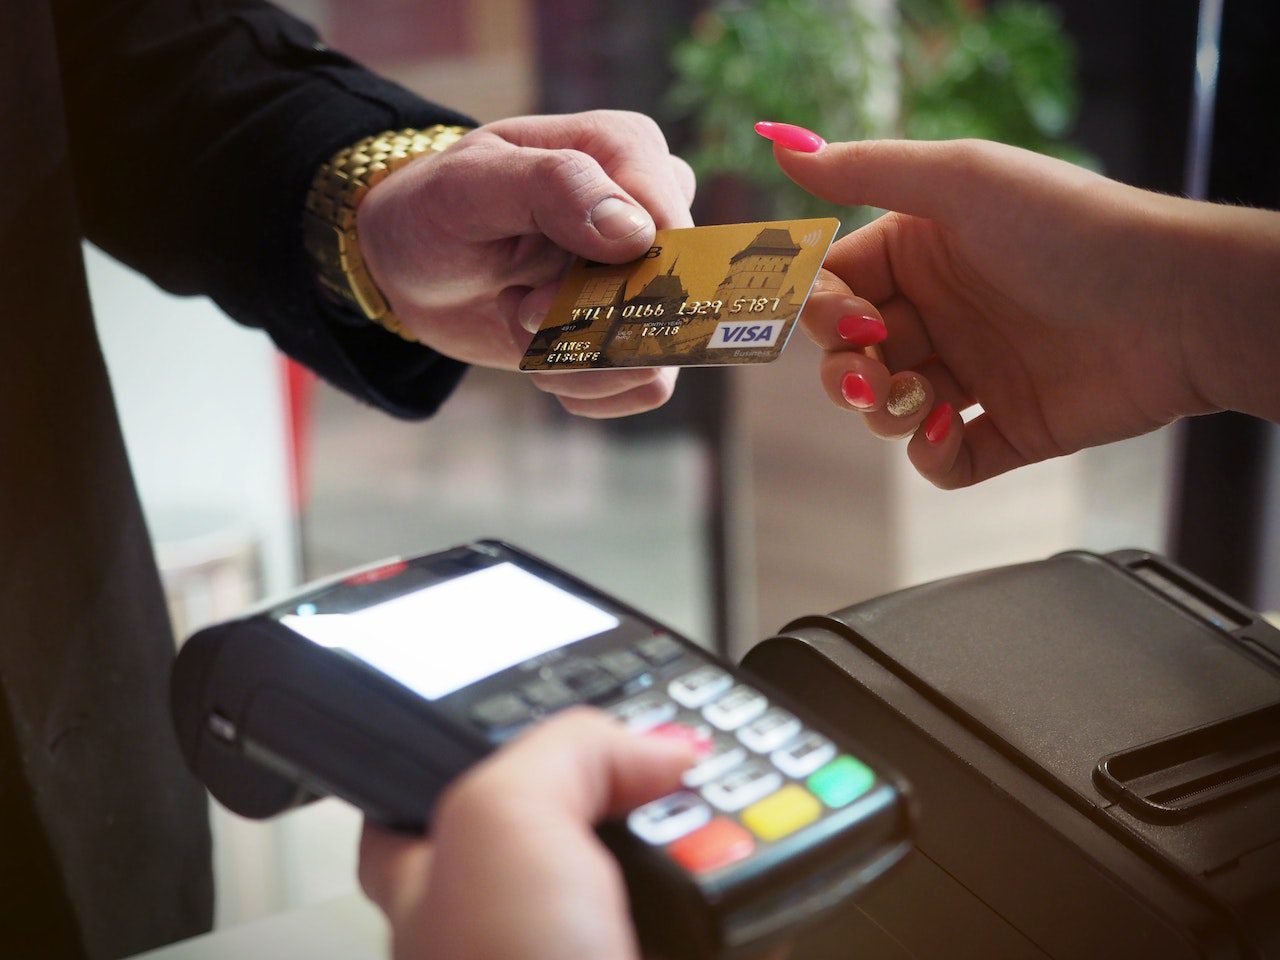 Featured image for “Bancos para autónomos: cuentas sin comisiones y tarjetas gratuitas”